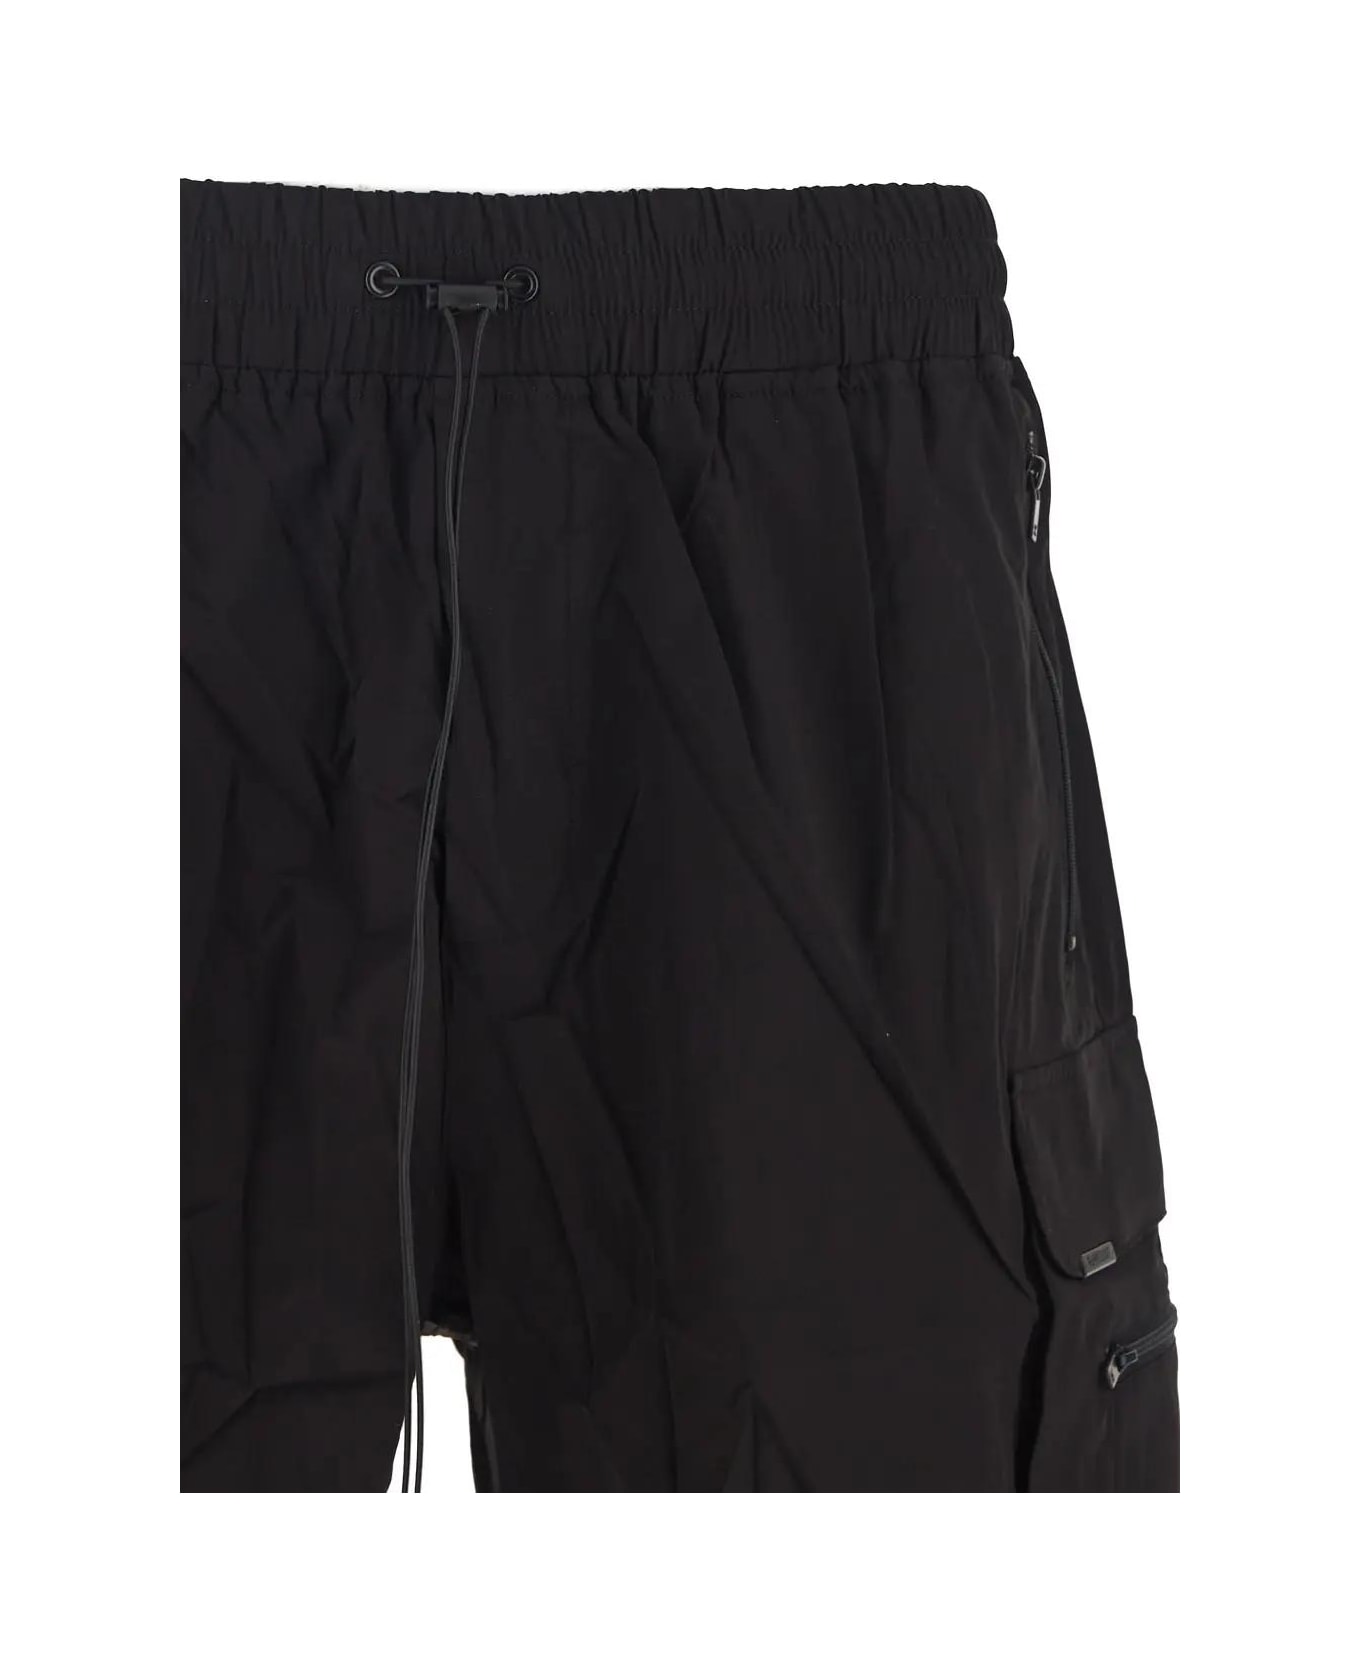 REPRESENT 247 Shorts - Black